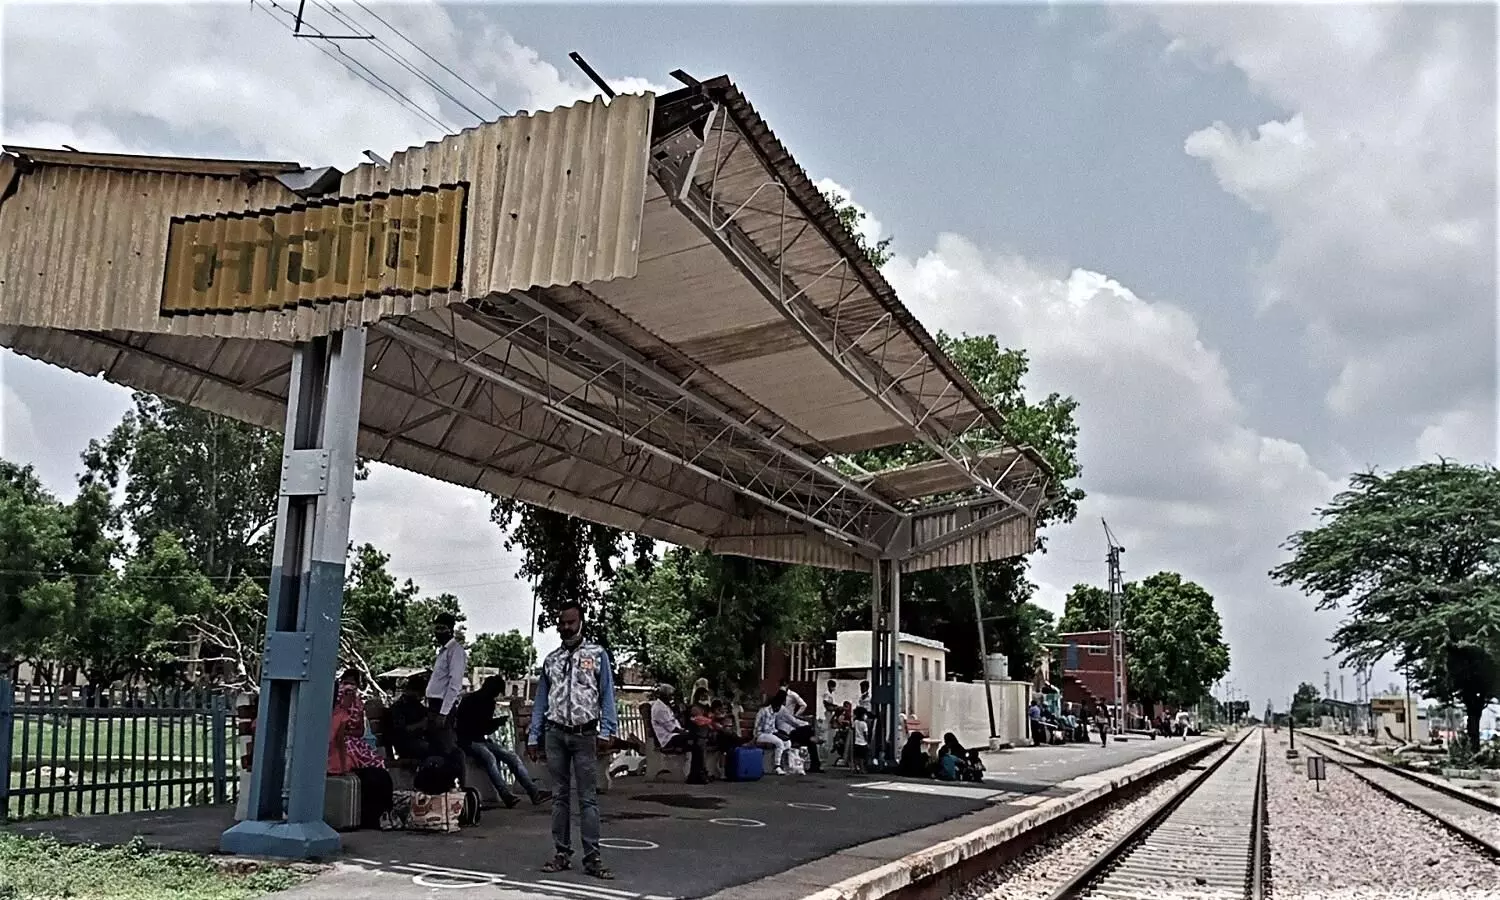 भोगांव रेलवे स्टेशन पर यात्रियों को करना पड़ा ट्रेन का इंतजार